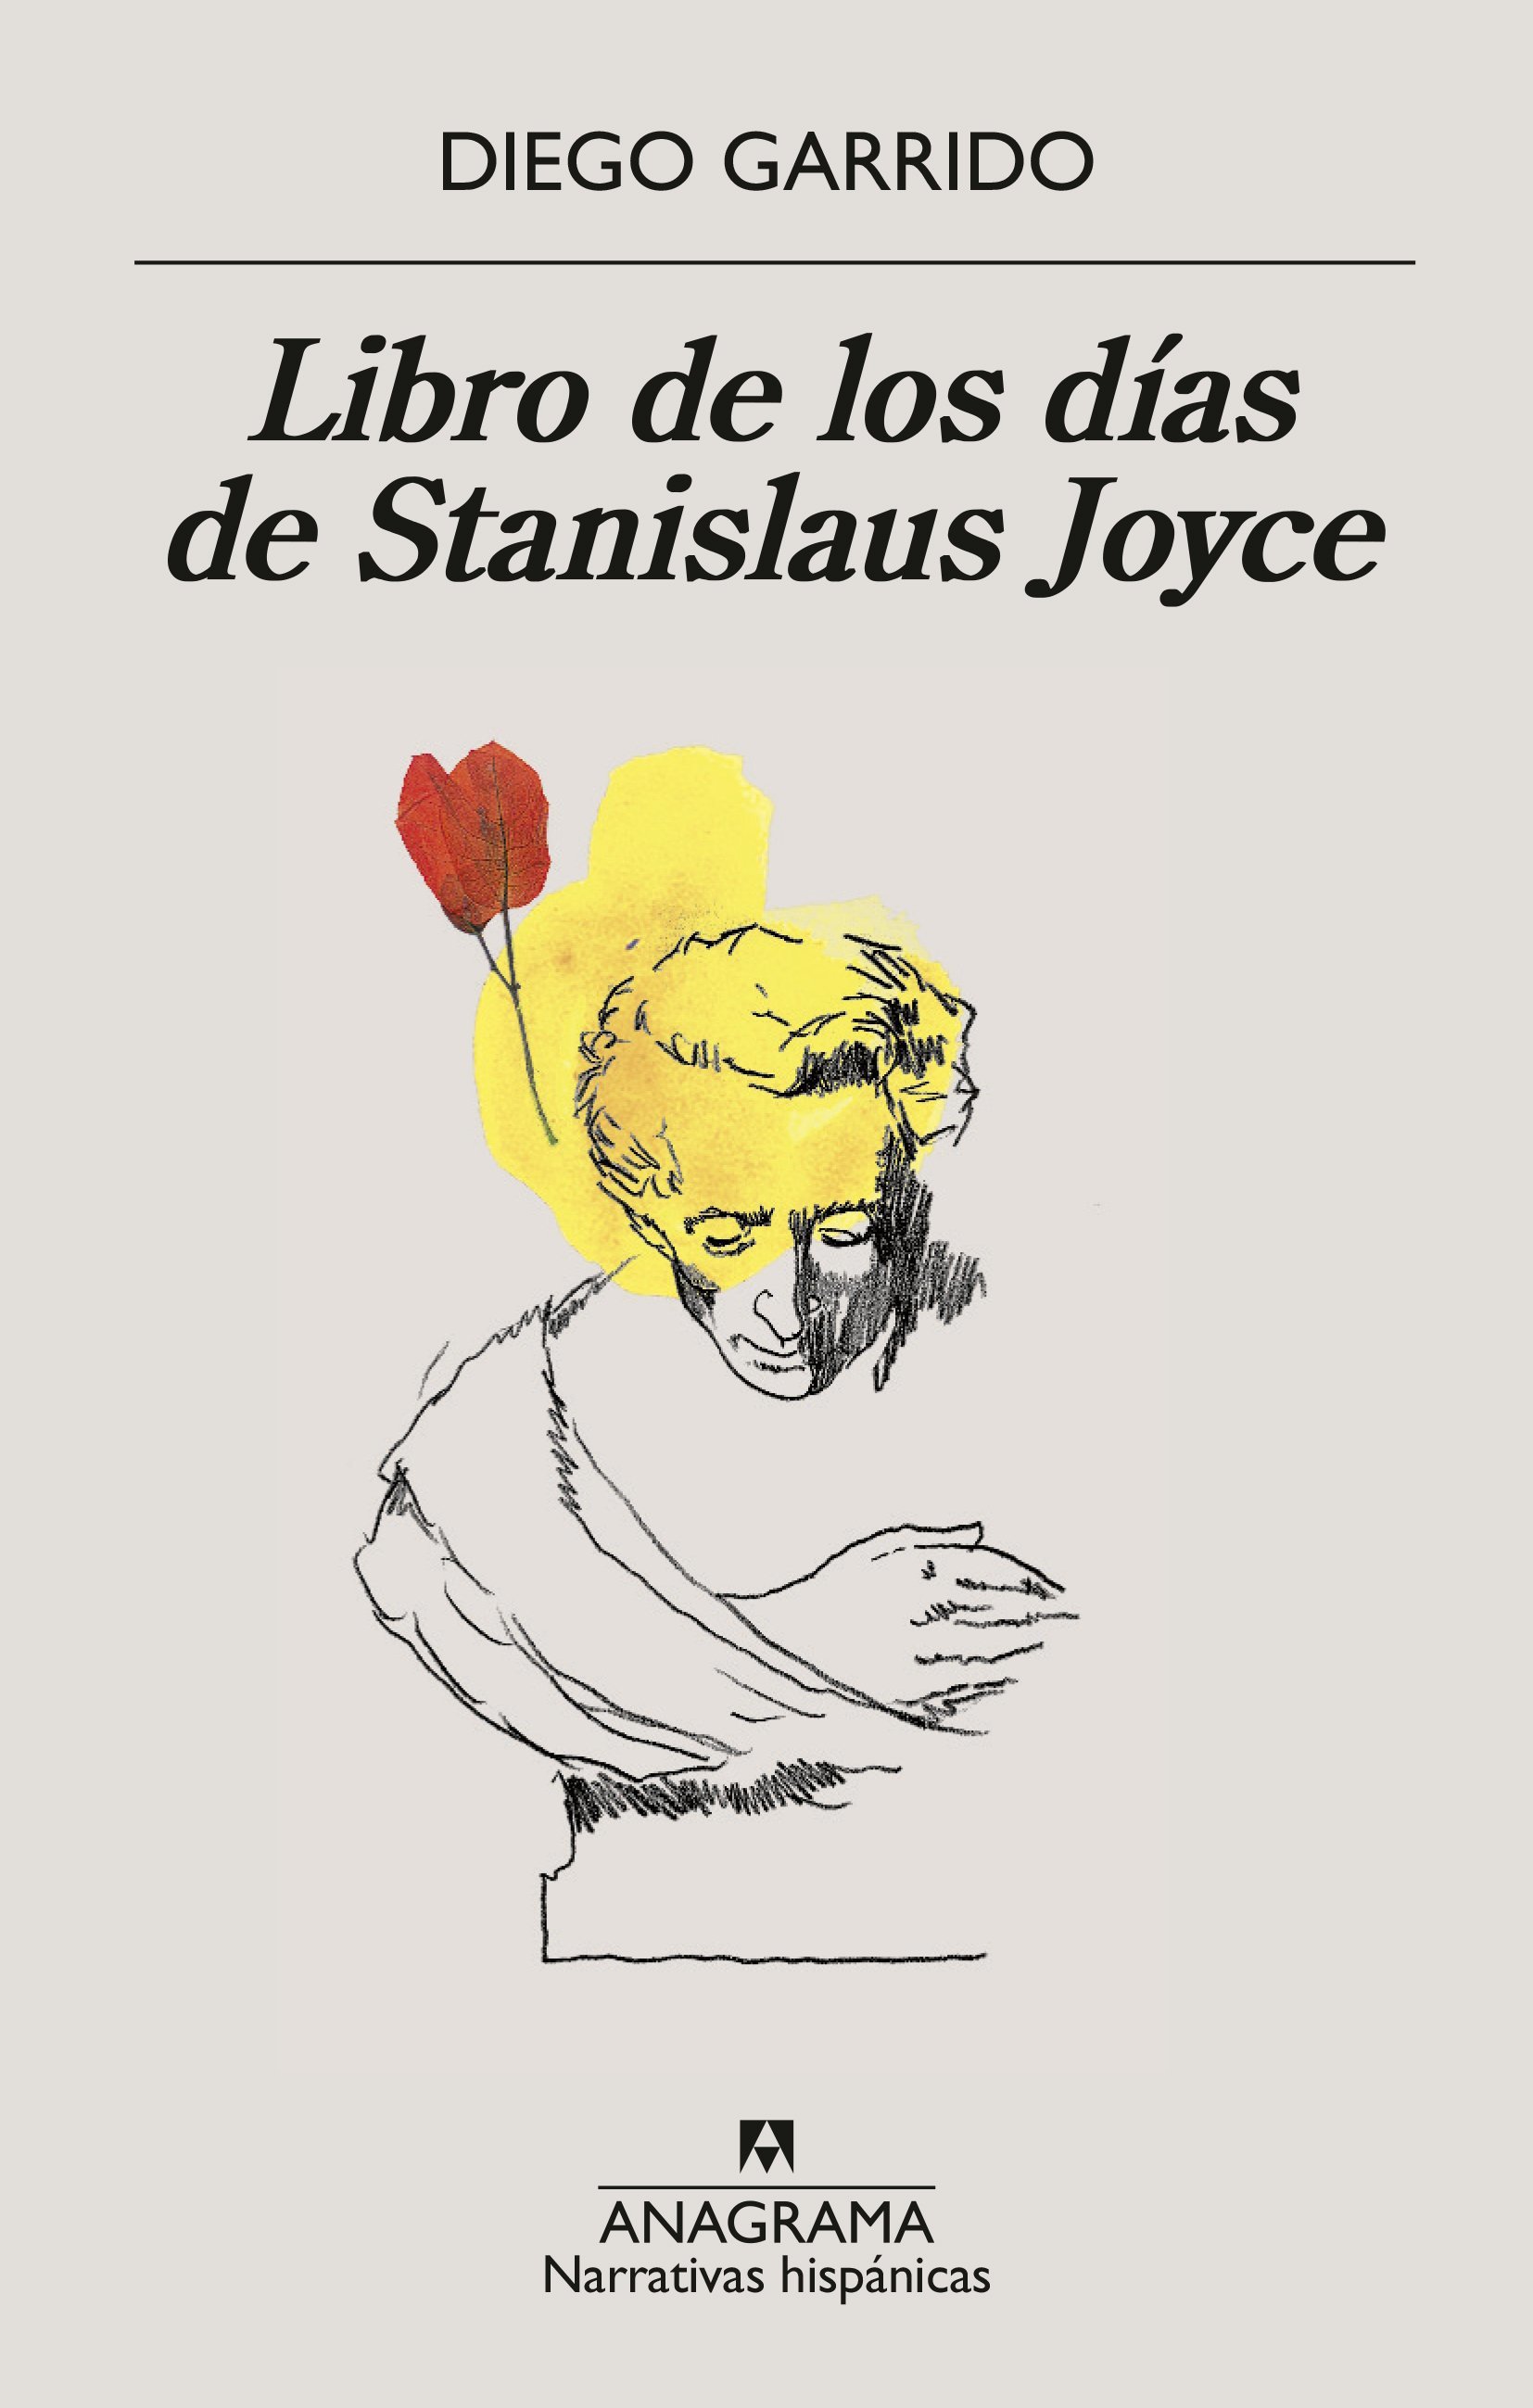 Diego Garrido presenta "Libro de los días de Stanislaus Joyce"